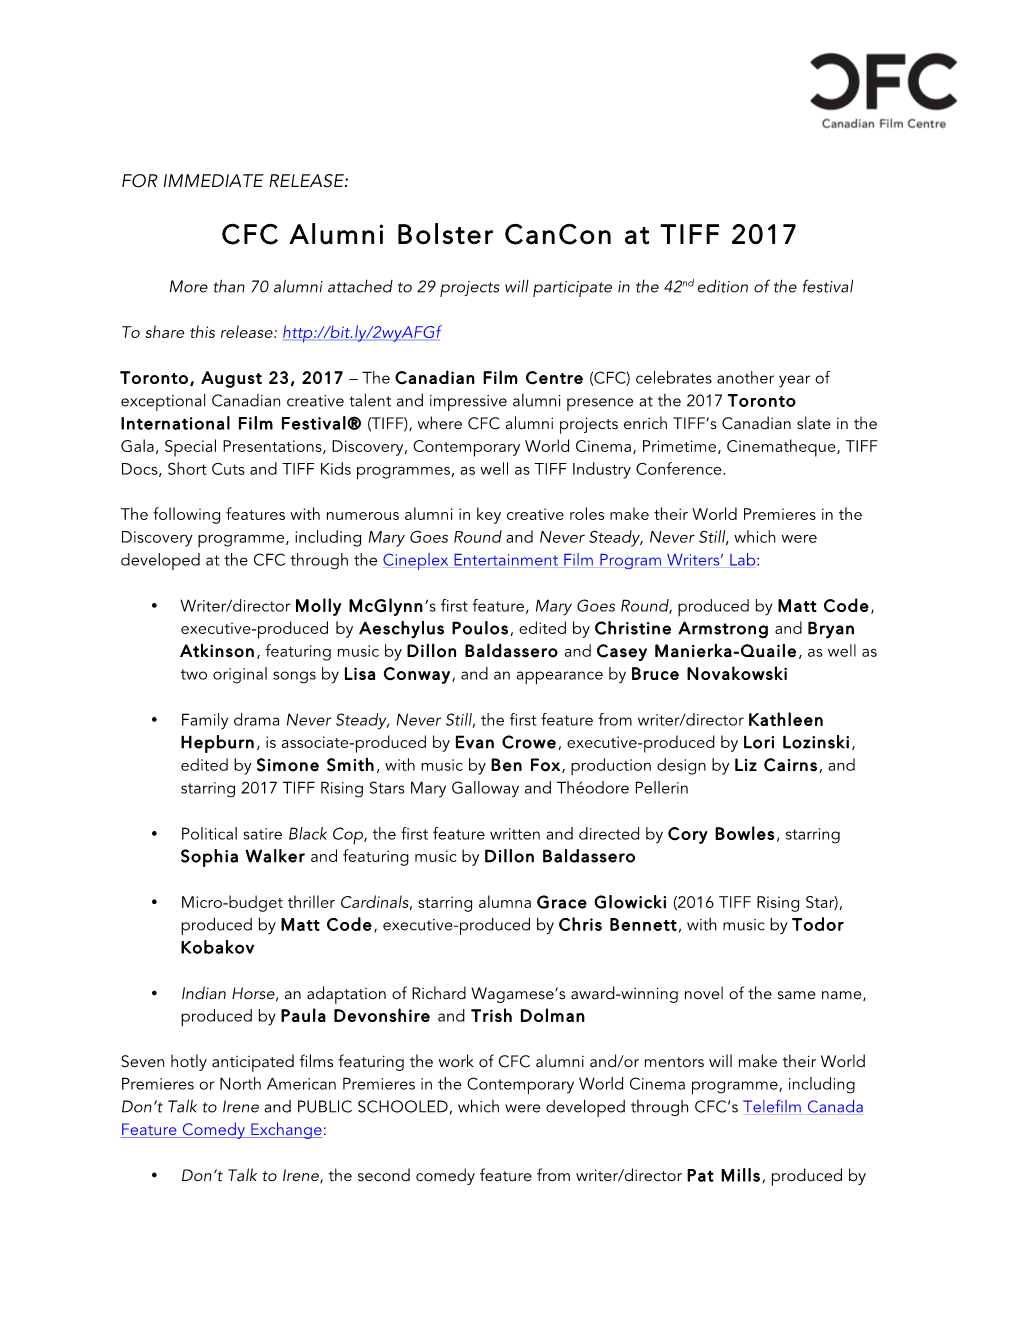 CFC Alumni Bolster Cancon at TIFF 2017